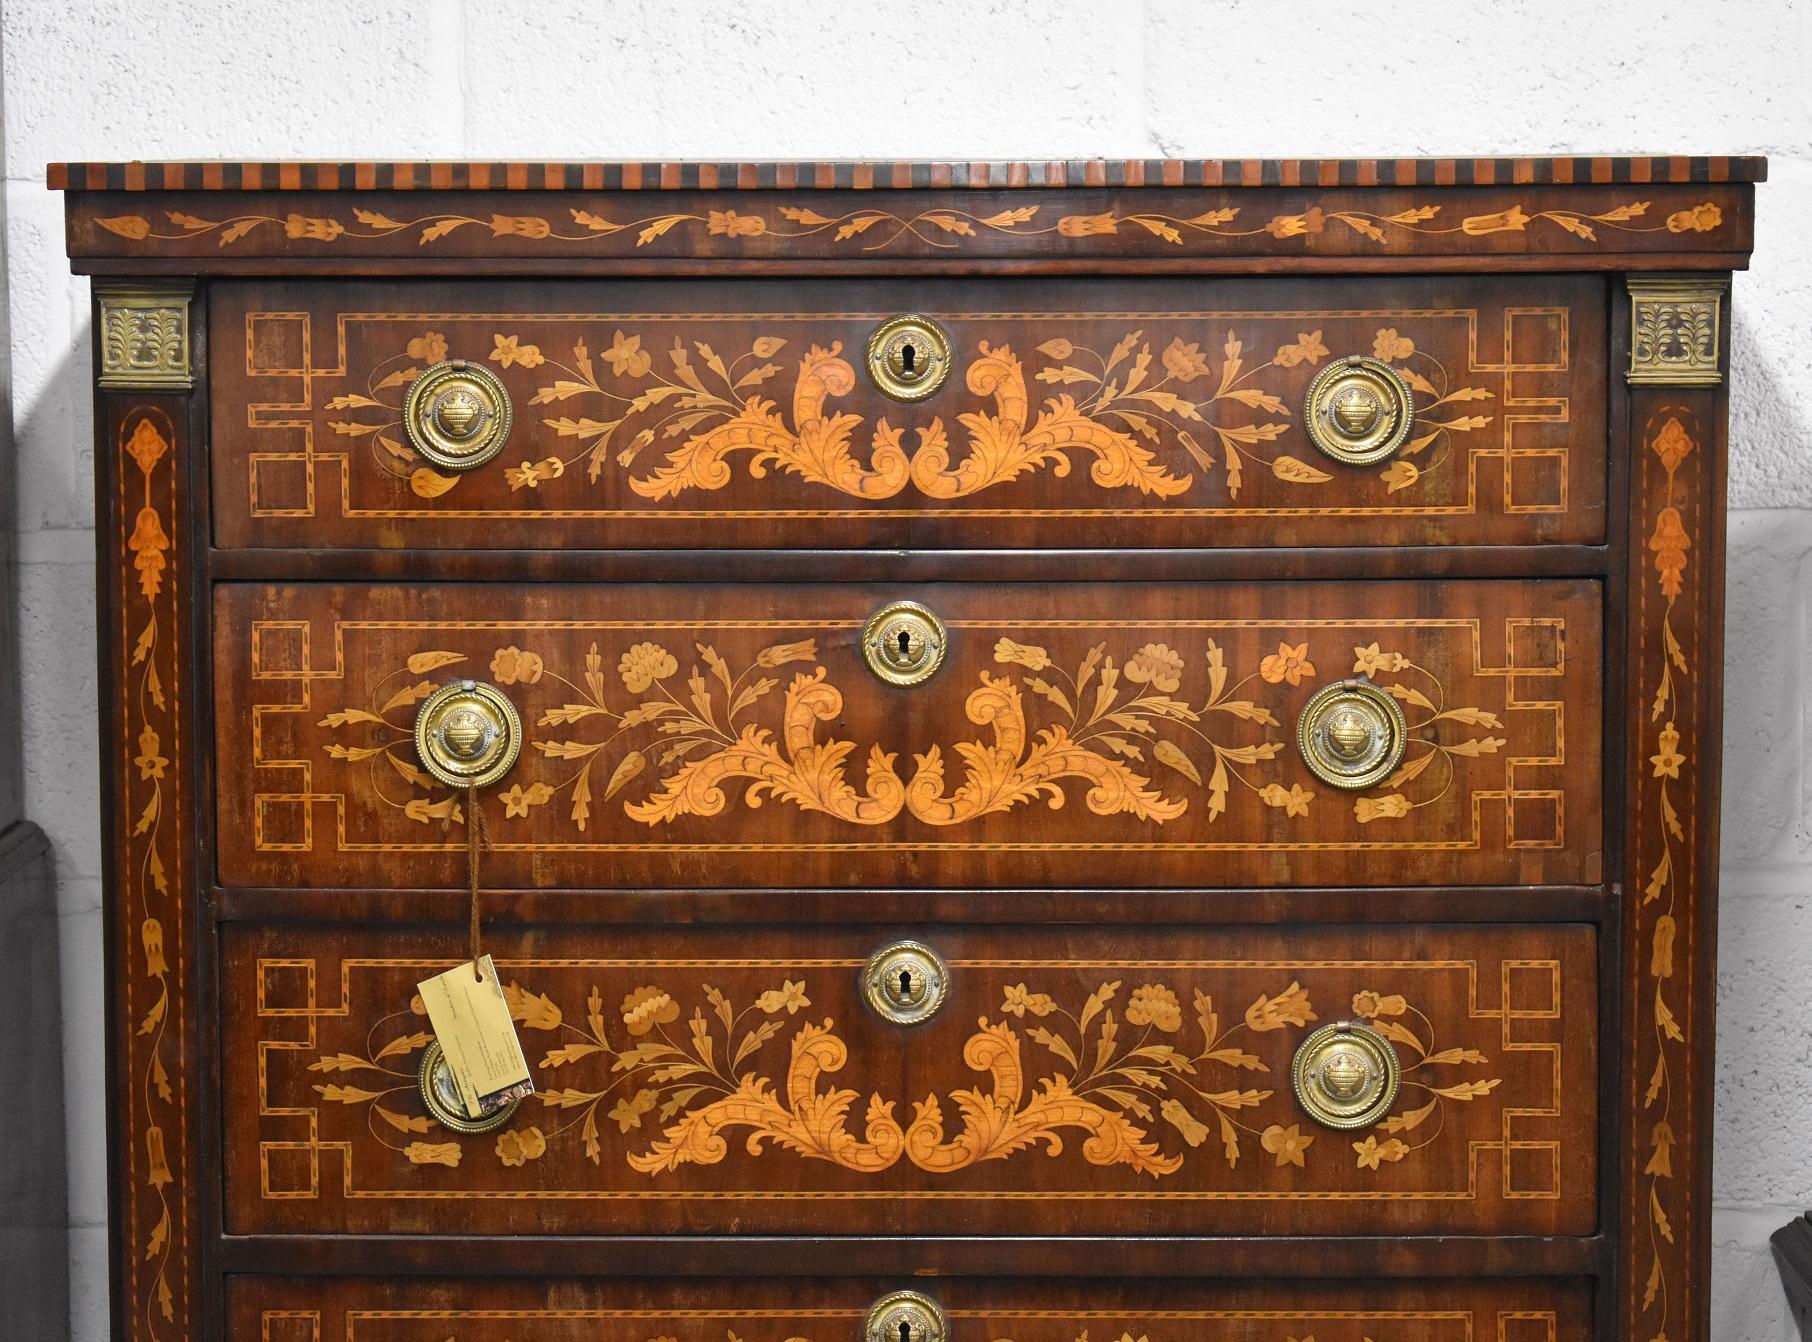 A vendre, une belle commode en marqueterie hollandaise du 18ème siècle. La commode comporte six tiroirs richement incrustés, chacun avec des poignées en laiton. Les côtés du coffre sont également incrustés de façon complexe, et reposent sur de